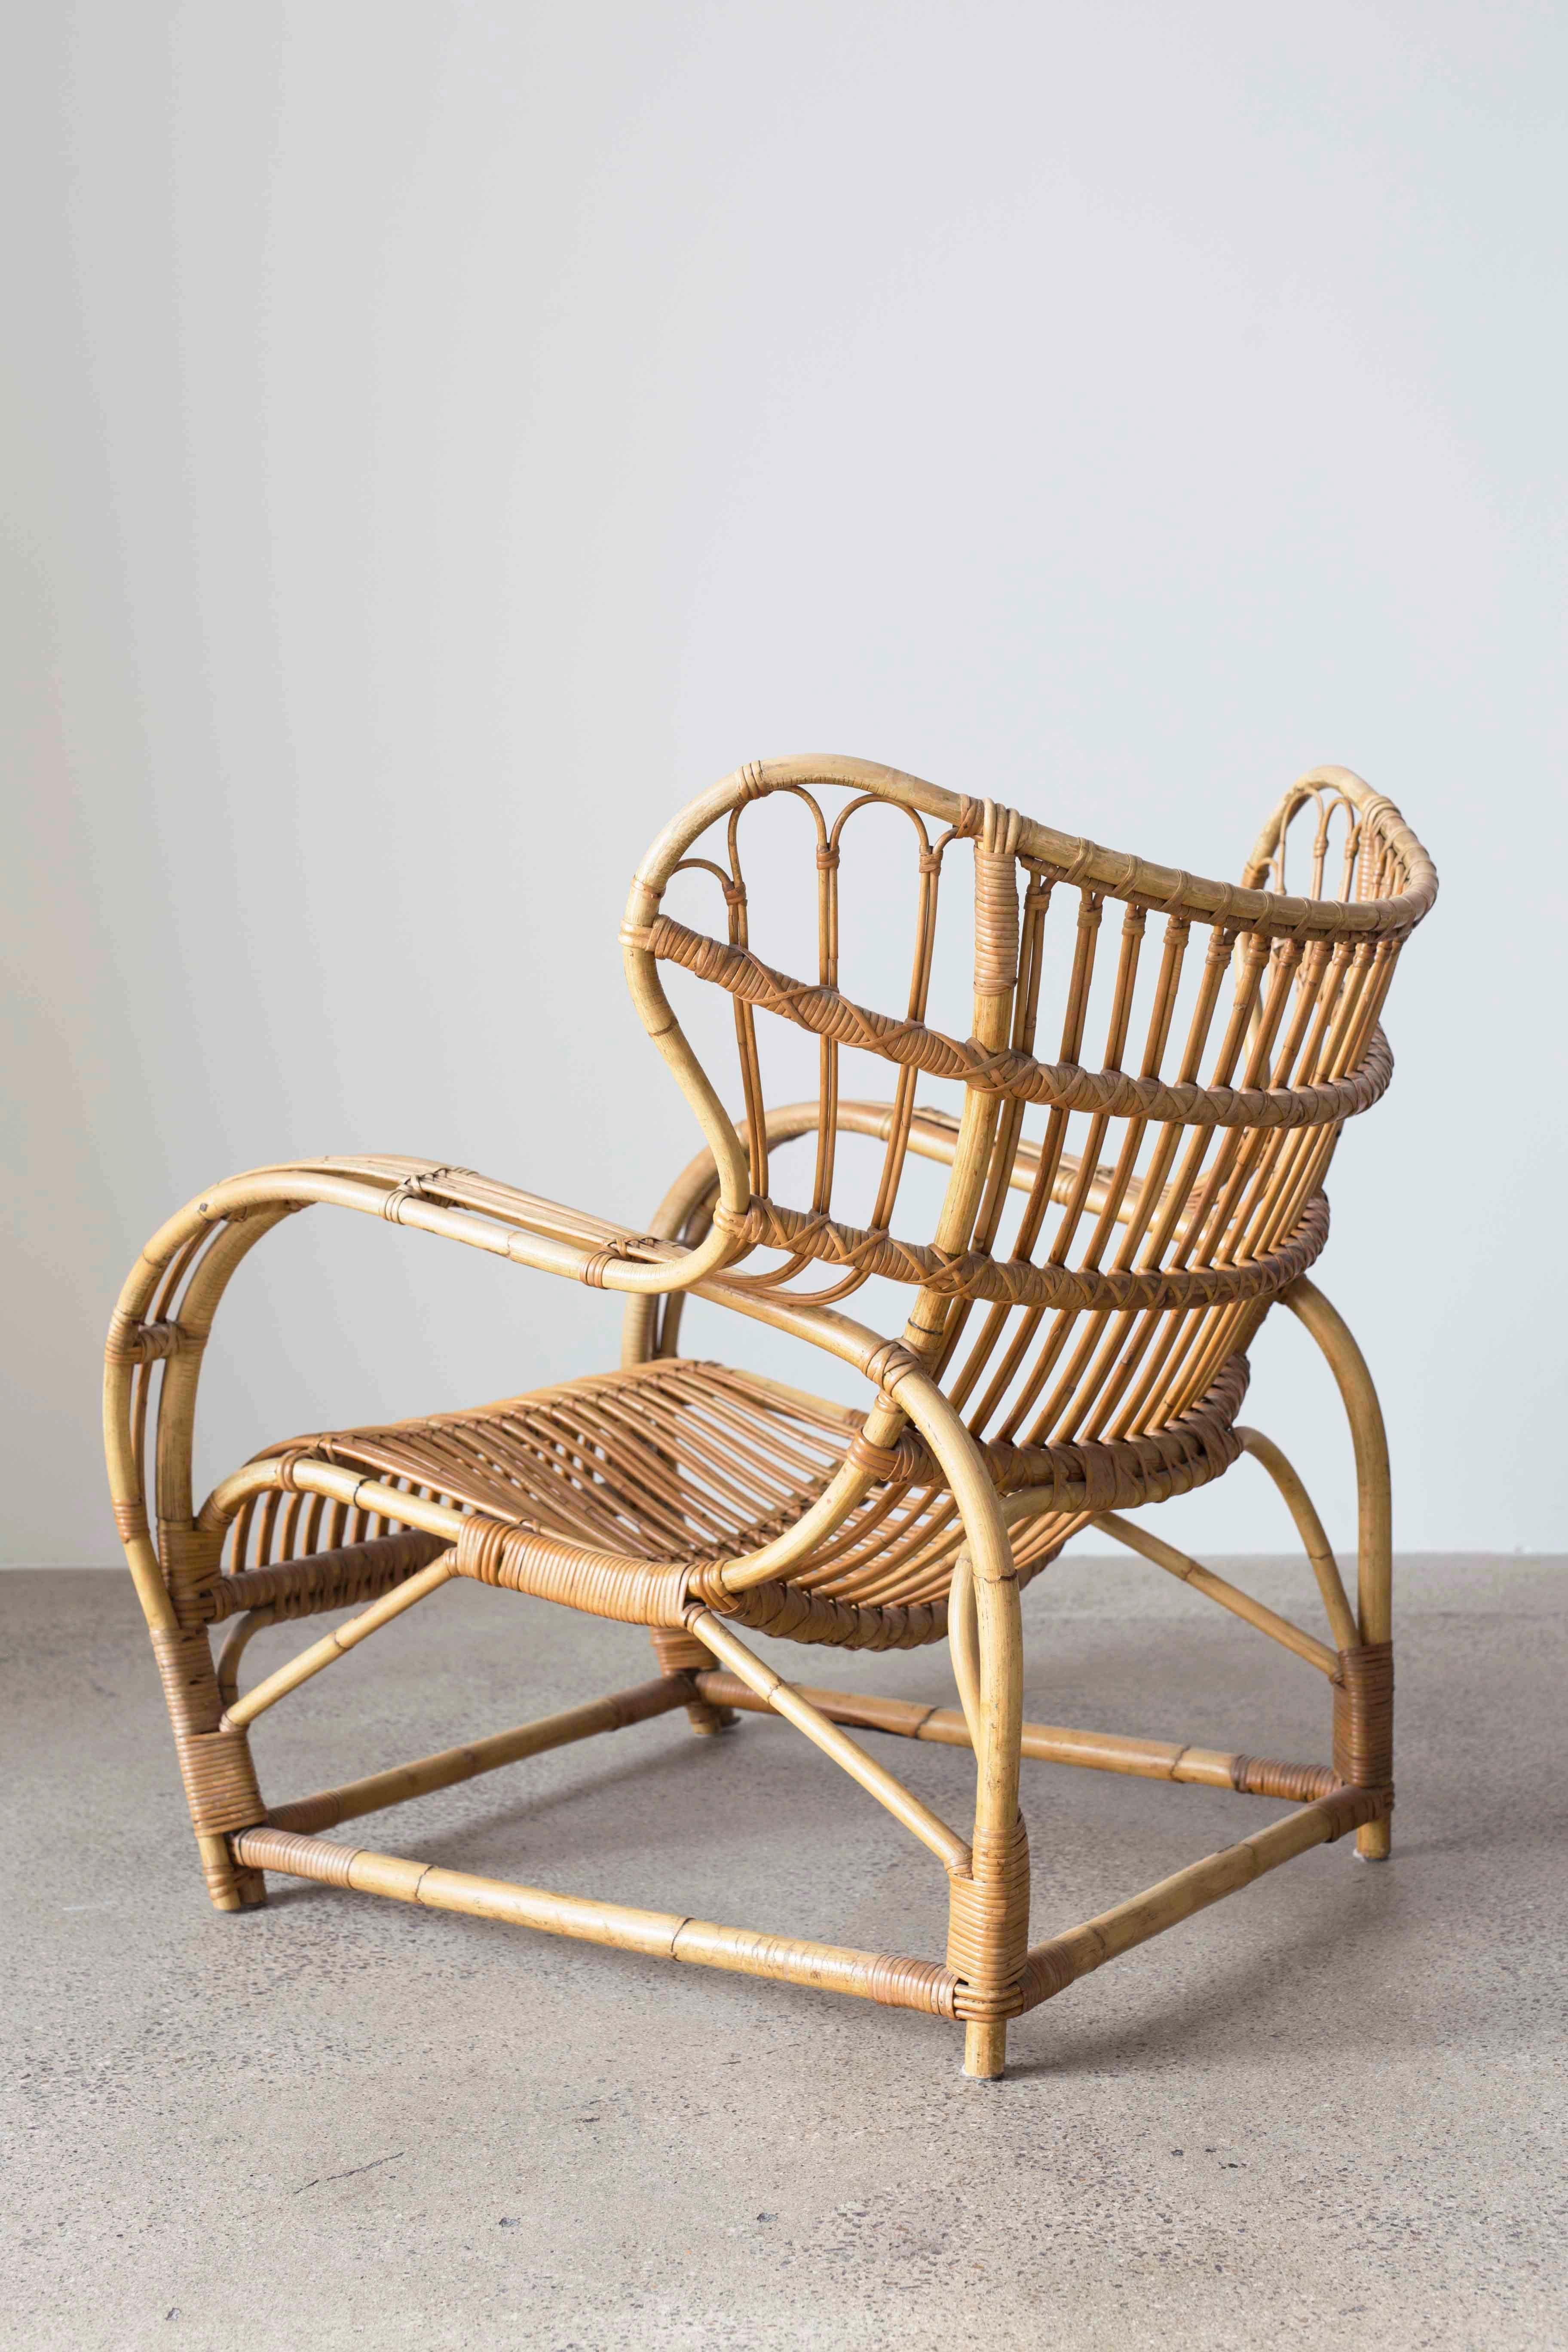 Rare Viggo Boesen rattan easy chair designed 1938 and made at E.V.A. Nissen & Co., Denmark.